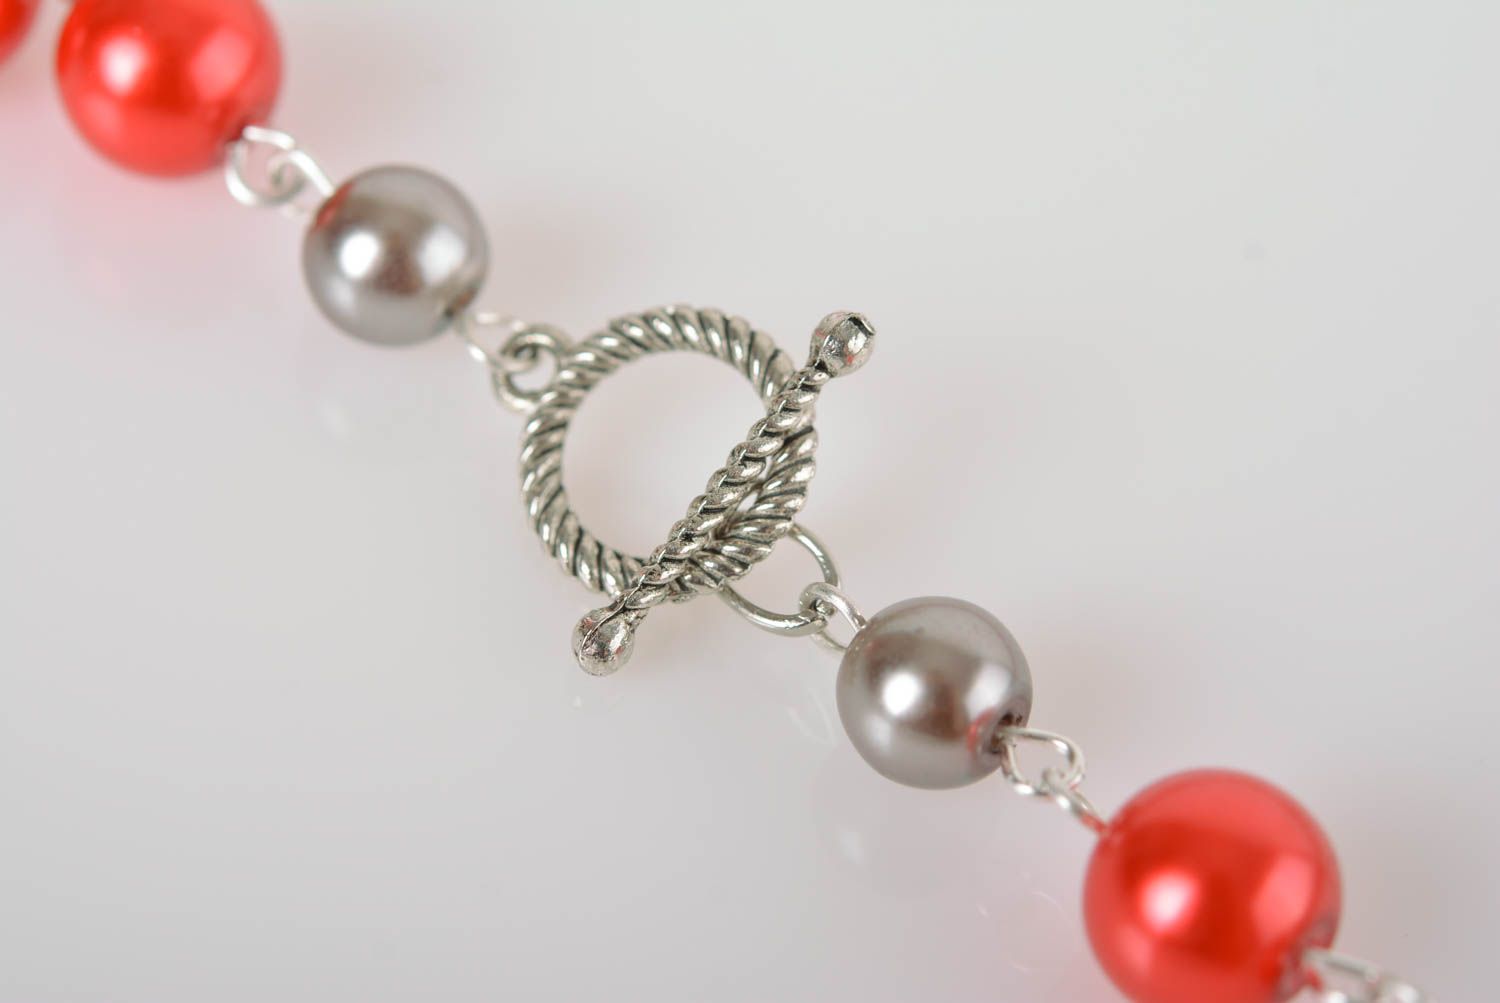 Collier für Frauen handmade Perlen Schmuck Frauen Accessoire Frauen Geschenk foto 4